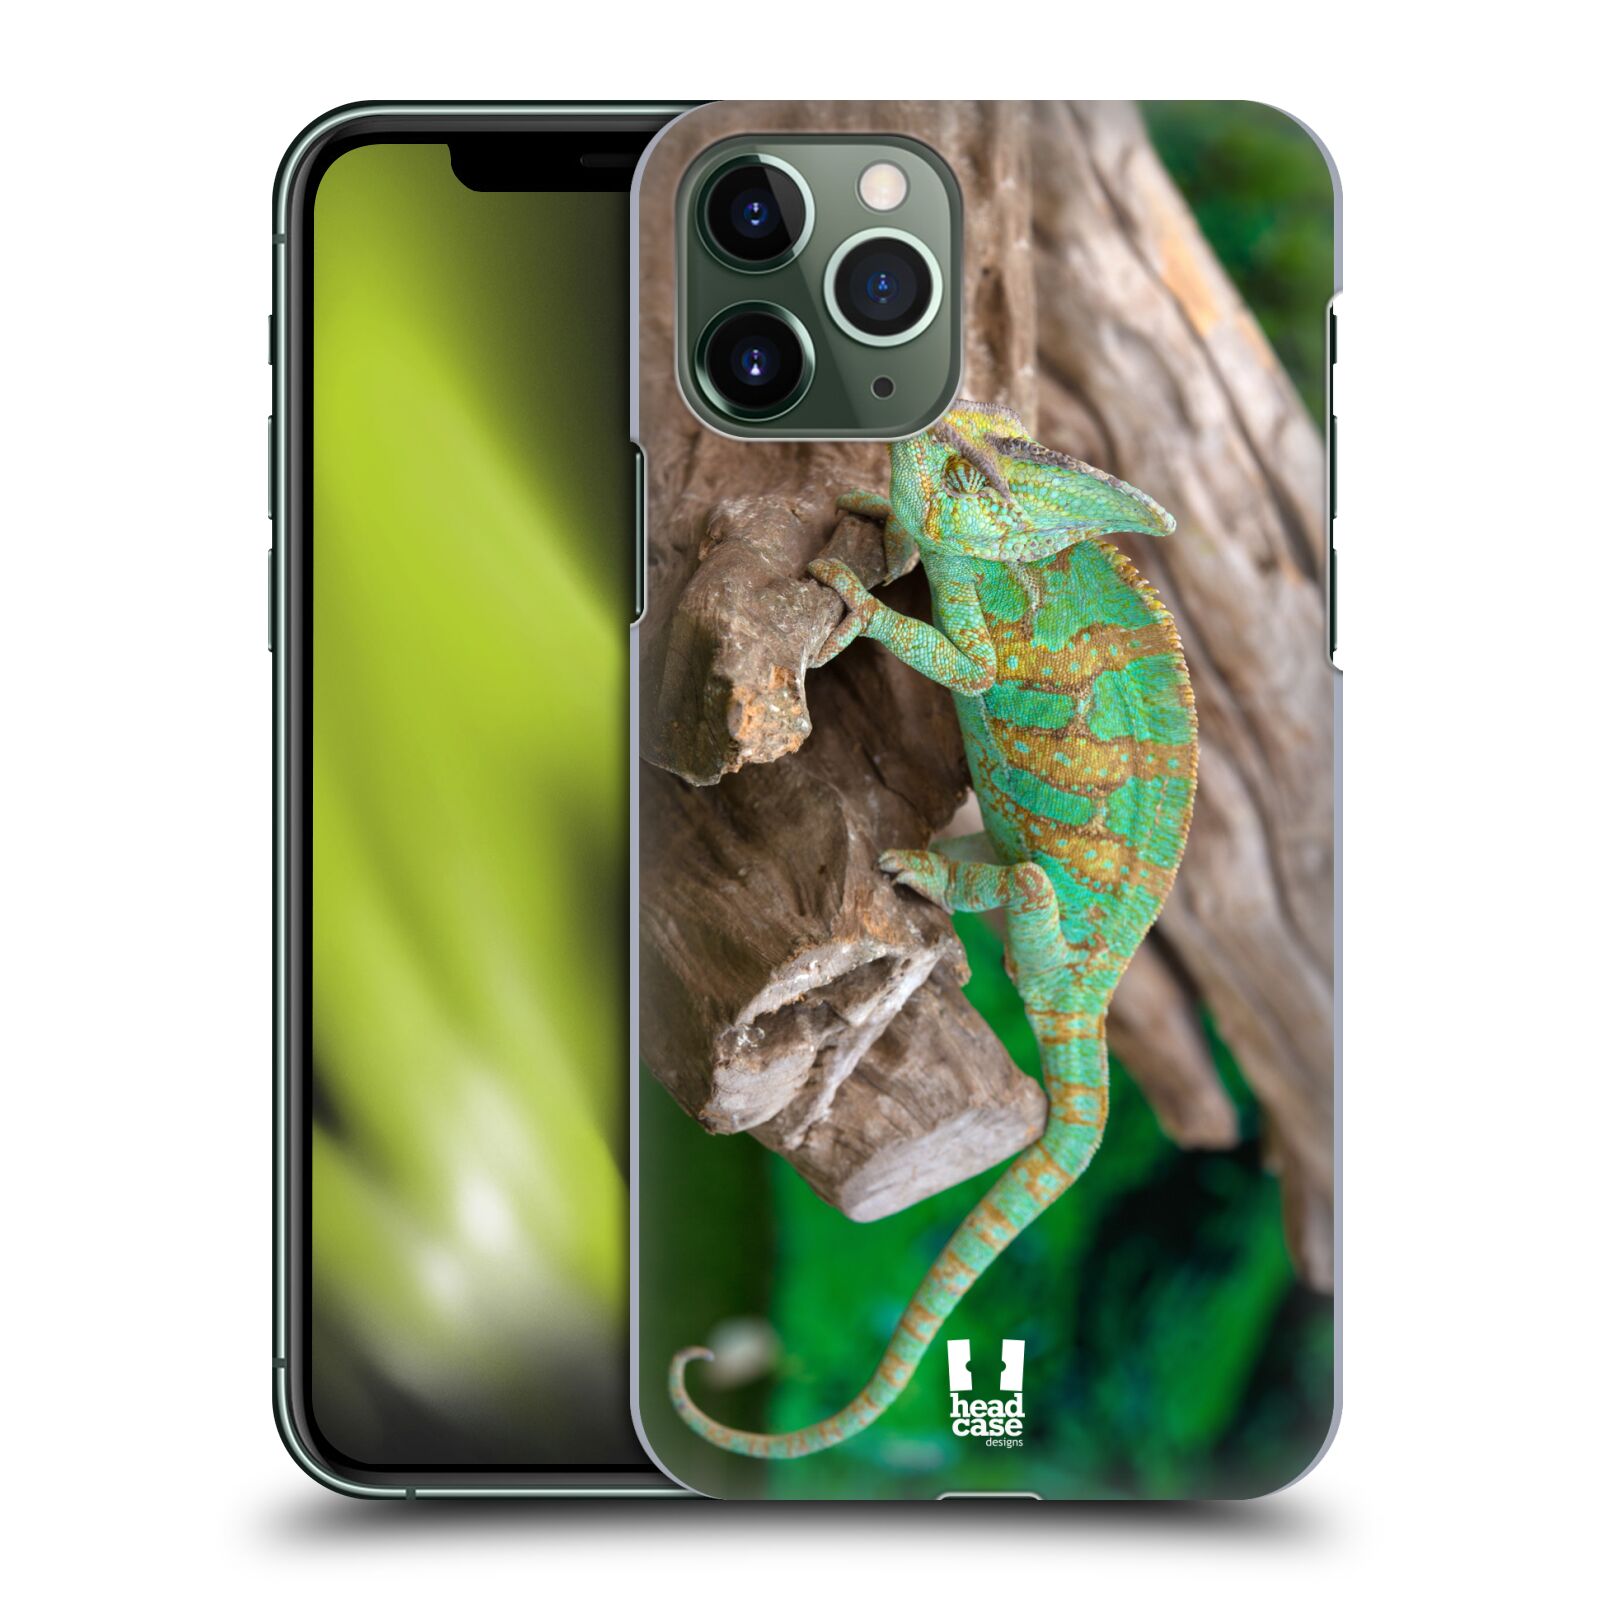 Pouzdro na mobil Apple Iphone 11 PRO - HEAD CASE - vzor slavná zvířata foto chameleon